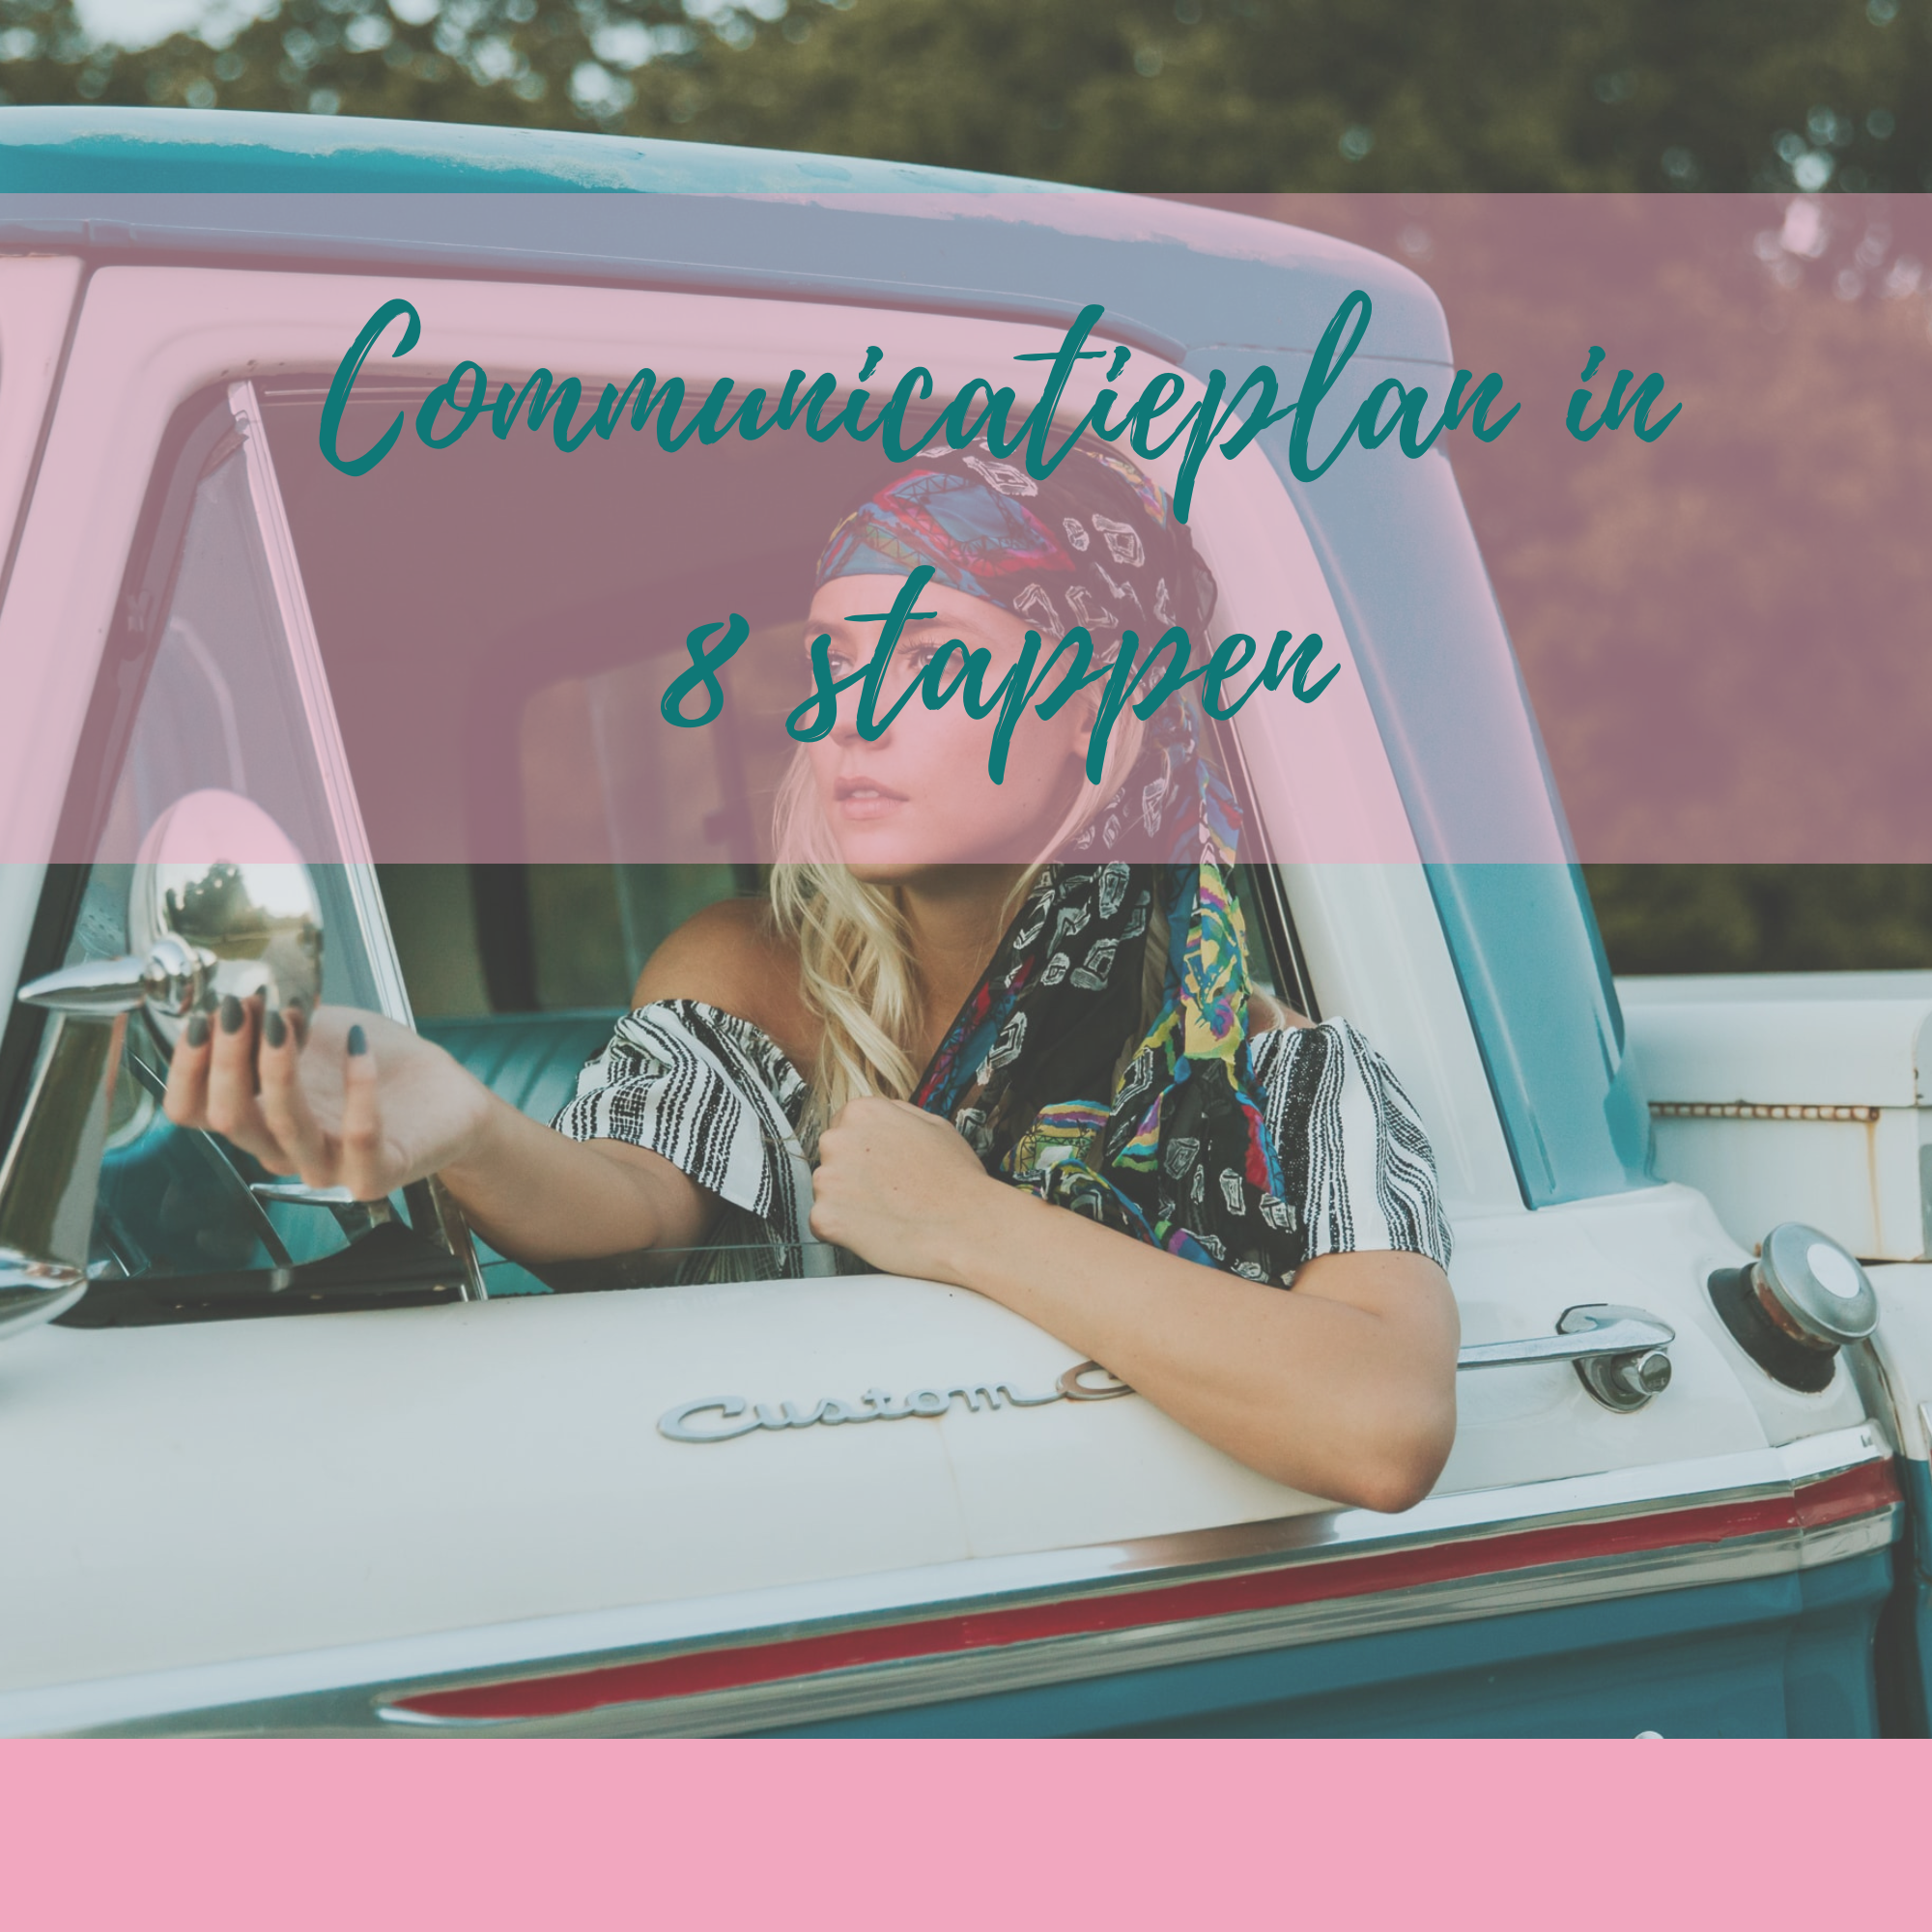 Communicatieplan in 8 stappen